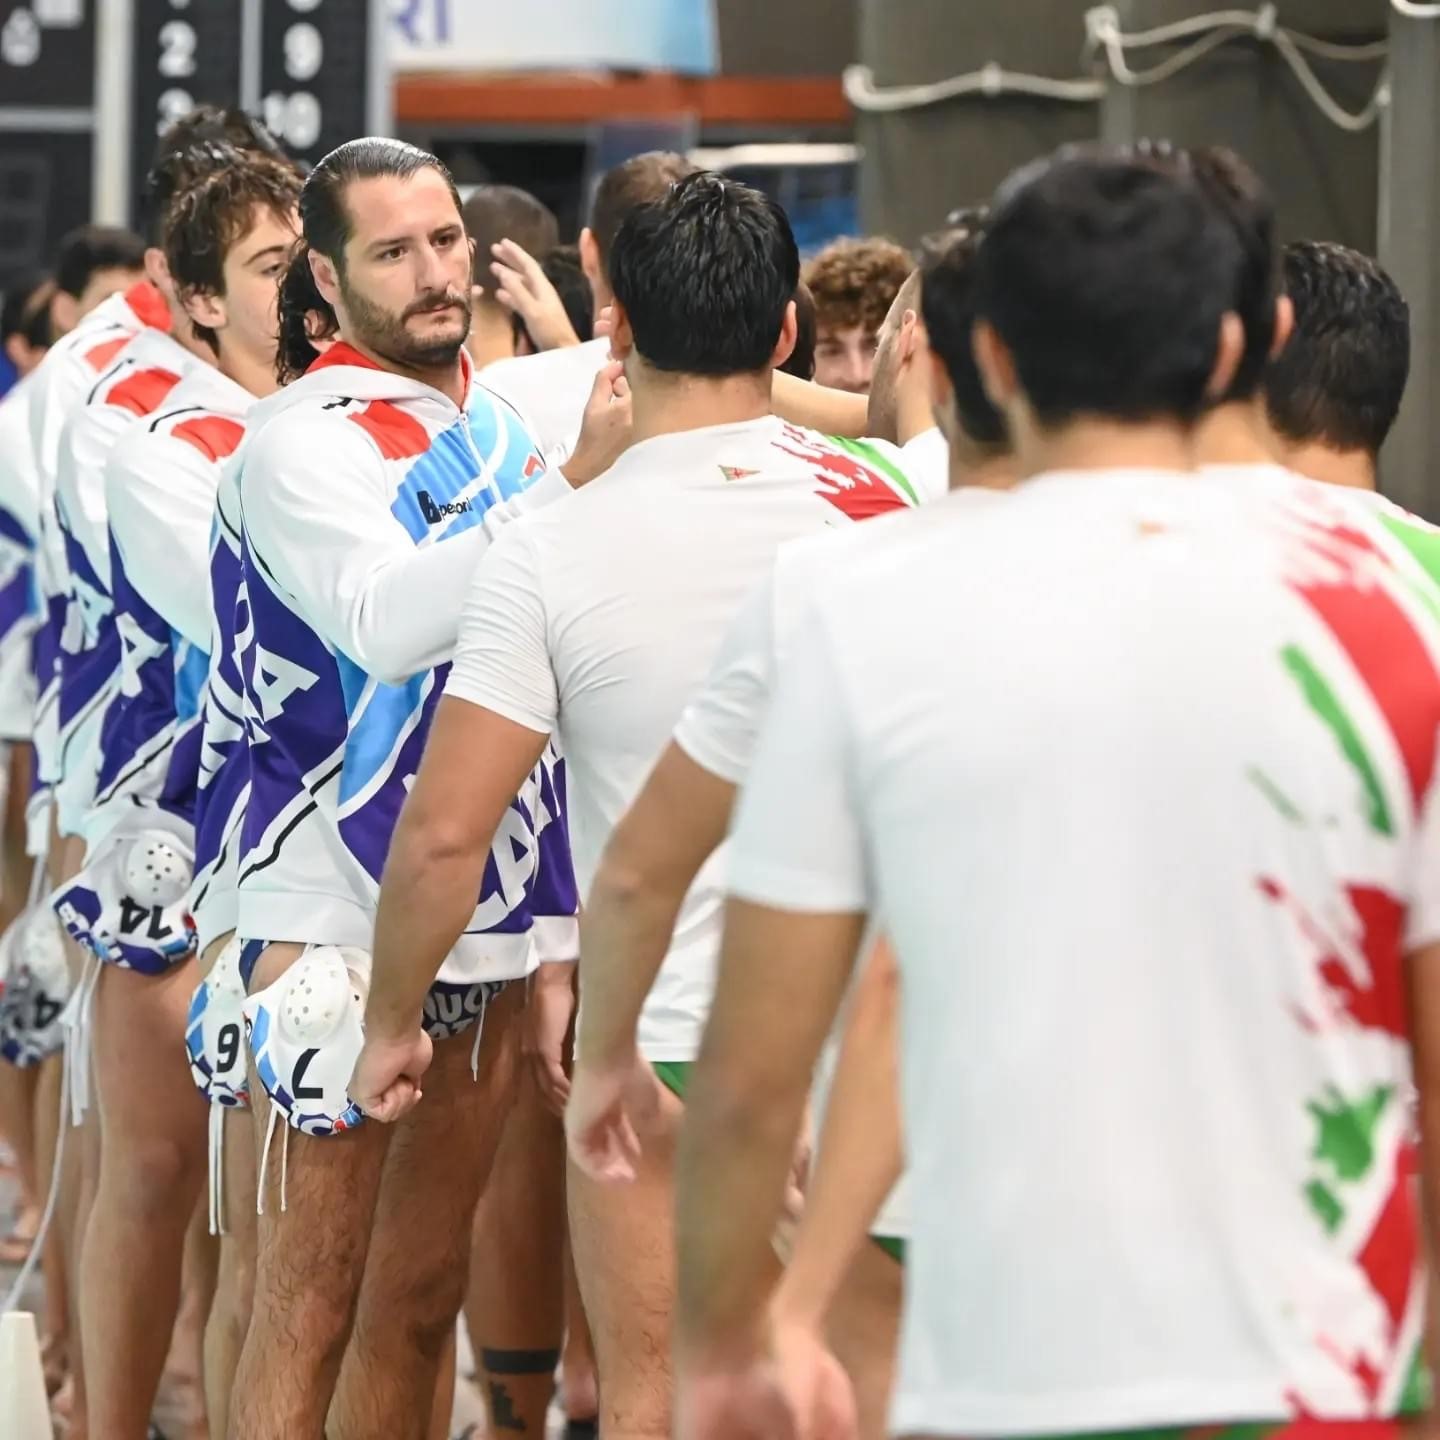 Nuoto Catania: domani alle 15.00 sfida contro il Pro Recco